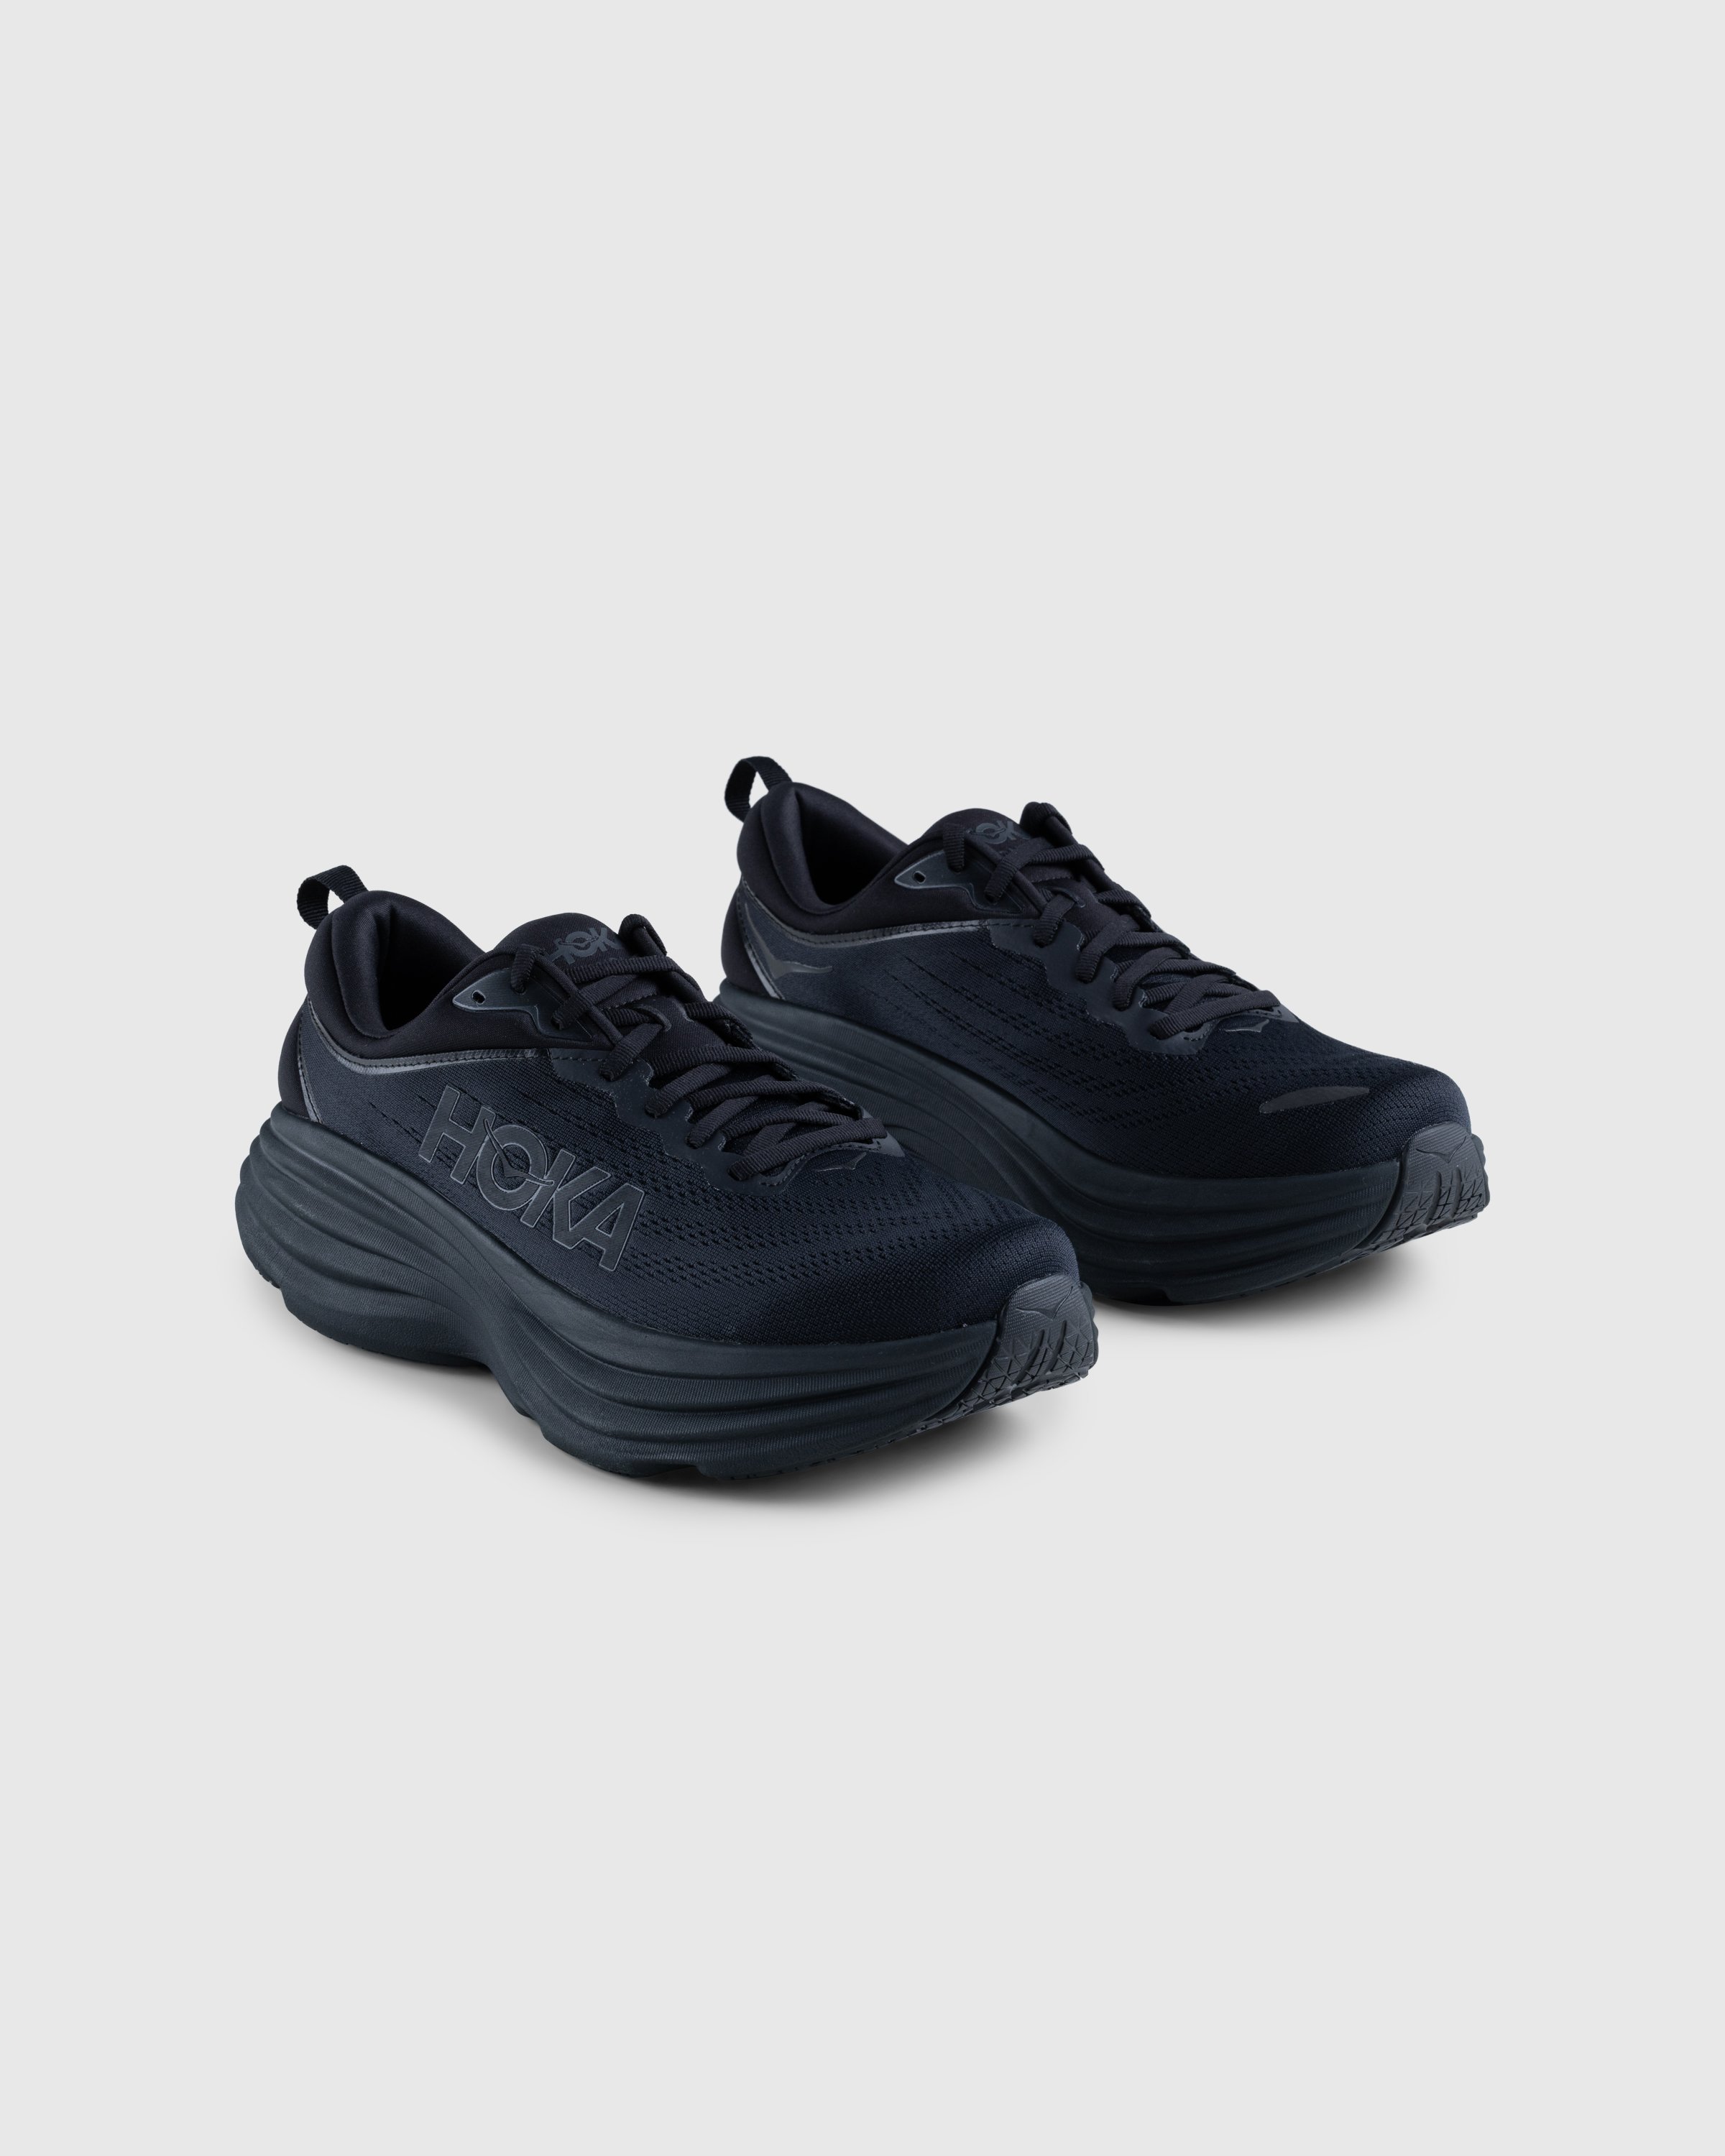 HOKA - Bondi 8 Black/Black - Footwear - Black - Image 3